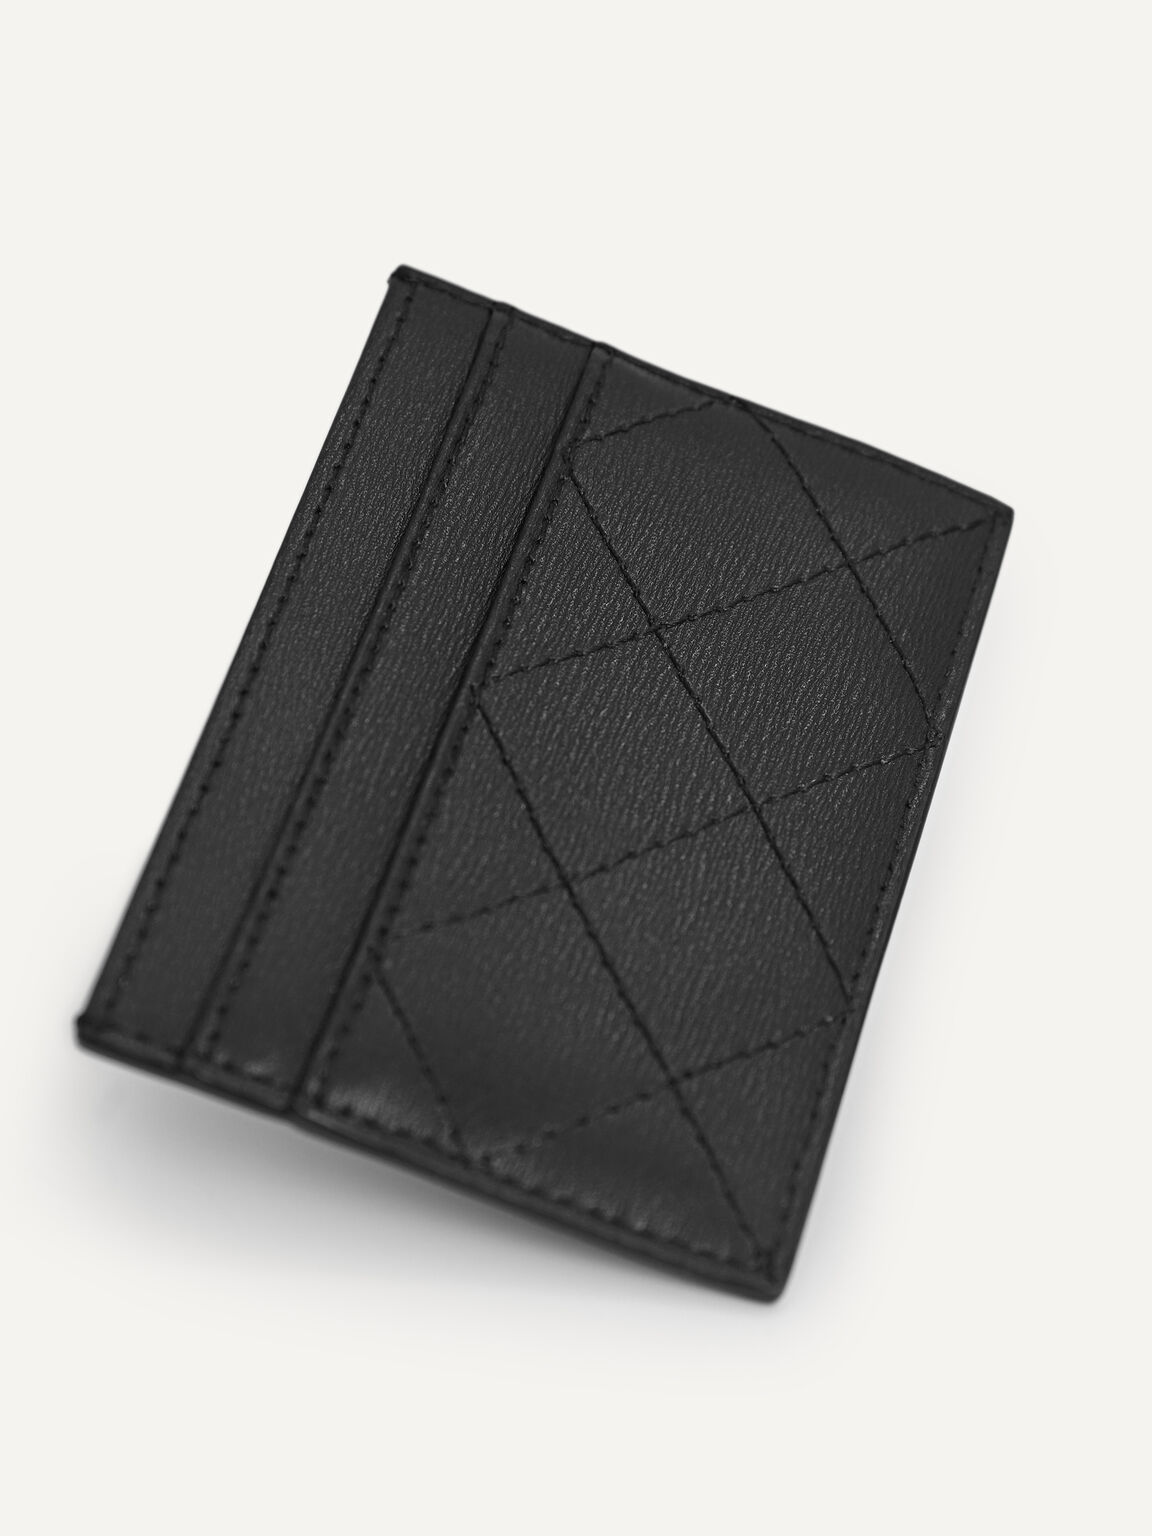 Cris-Cross Pattern Leather Cardholder, Black, hi-res